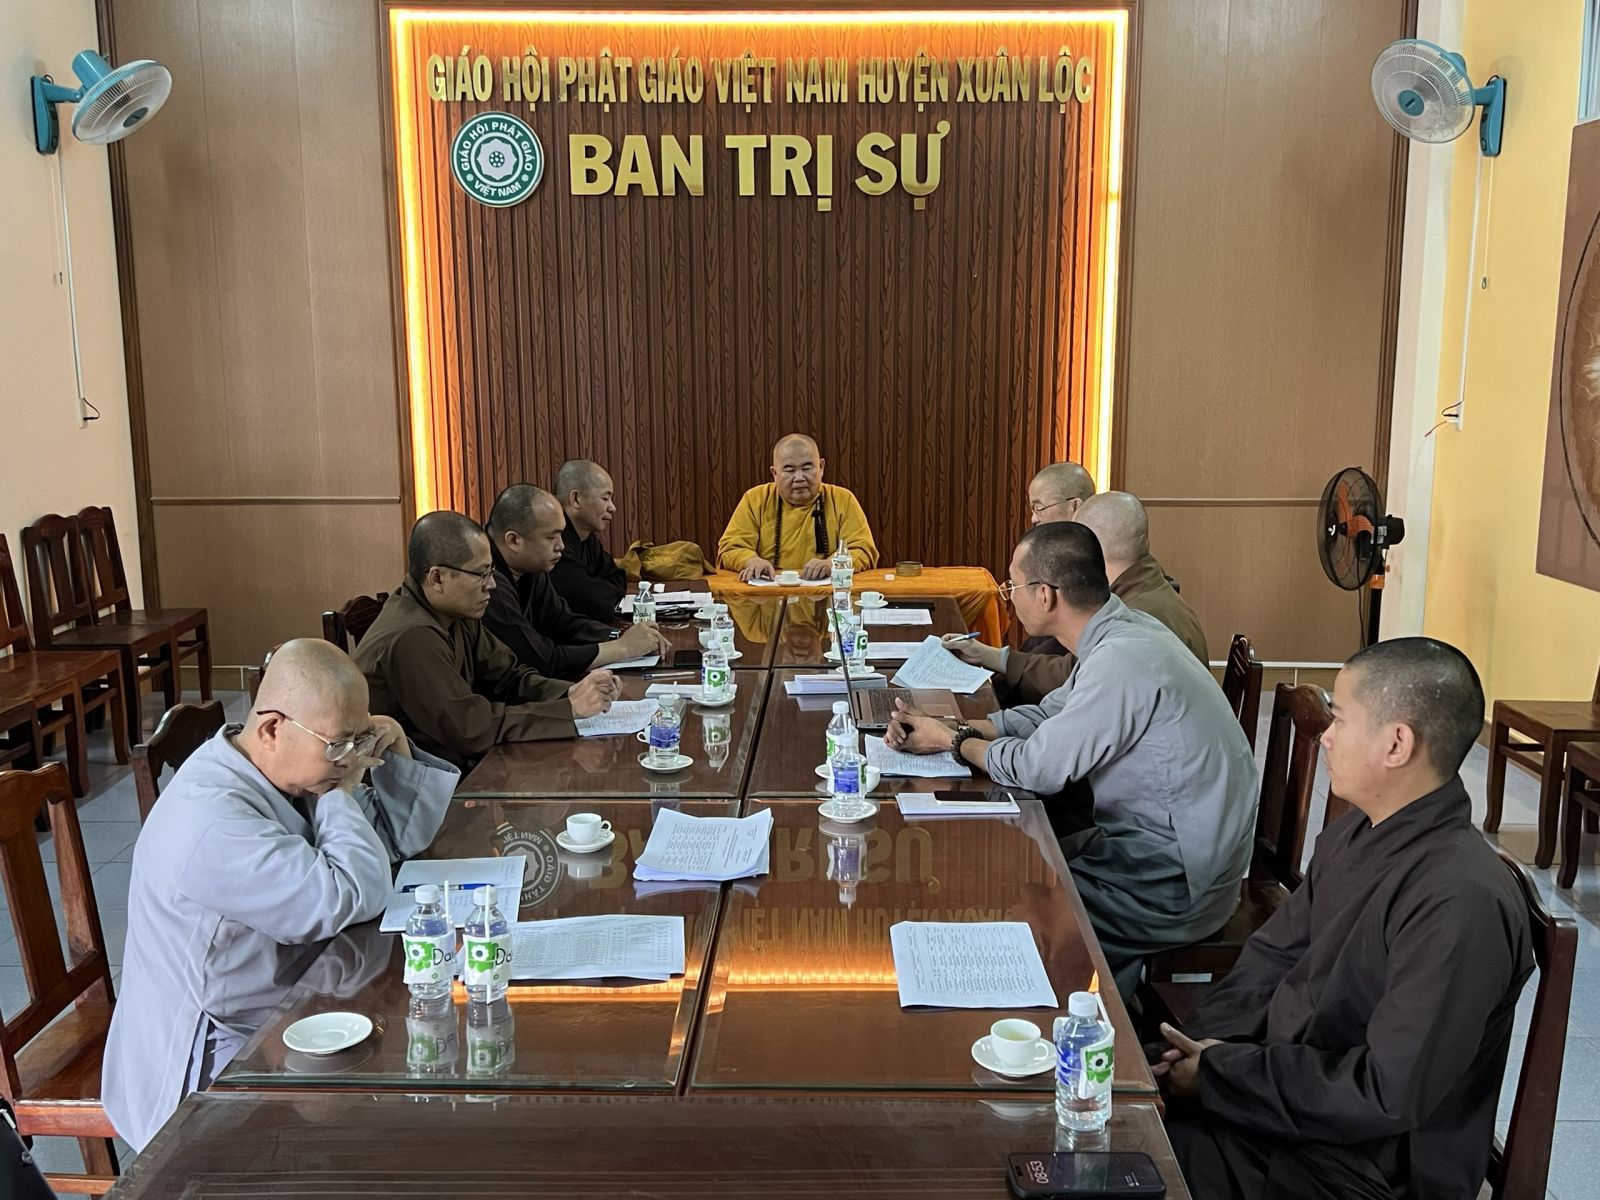 Đồng Nai: Thường trực BTS huyện Xuân Lộc họp thống nhất về việc cơ cấu nhân sự các Ban chuyên môn trực thuộc Ban Trị sự GHPGVN huyện.